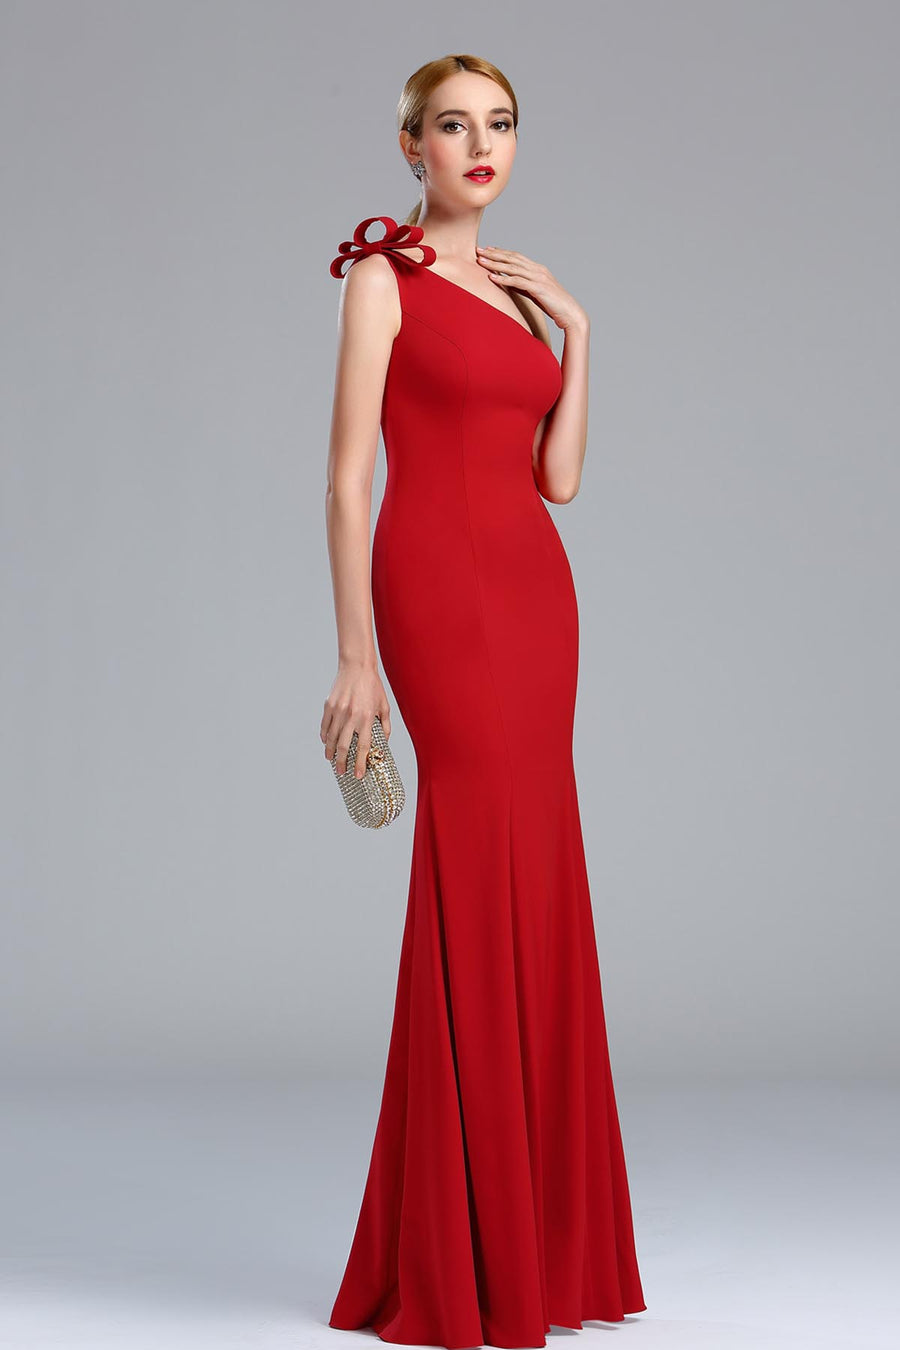 Mermaid/Trumpet One Shoulder Sleeveless Full Length Polyester Promo Dresses